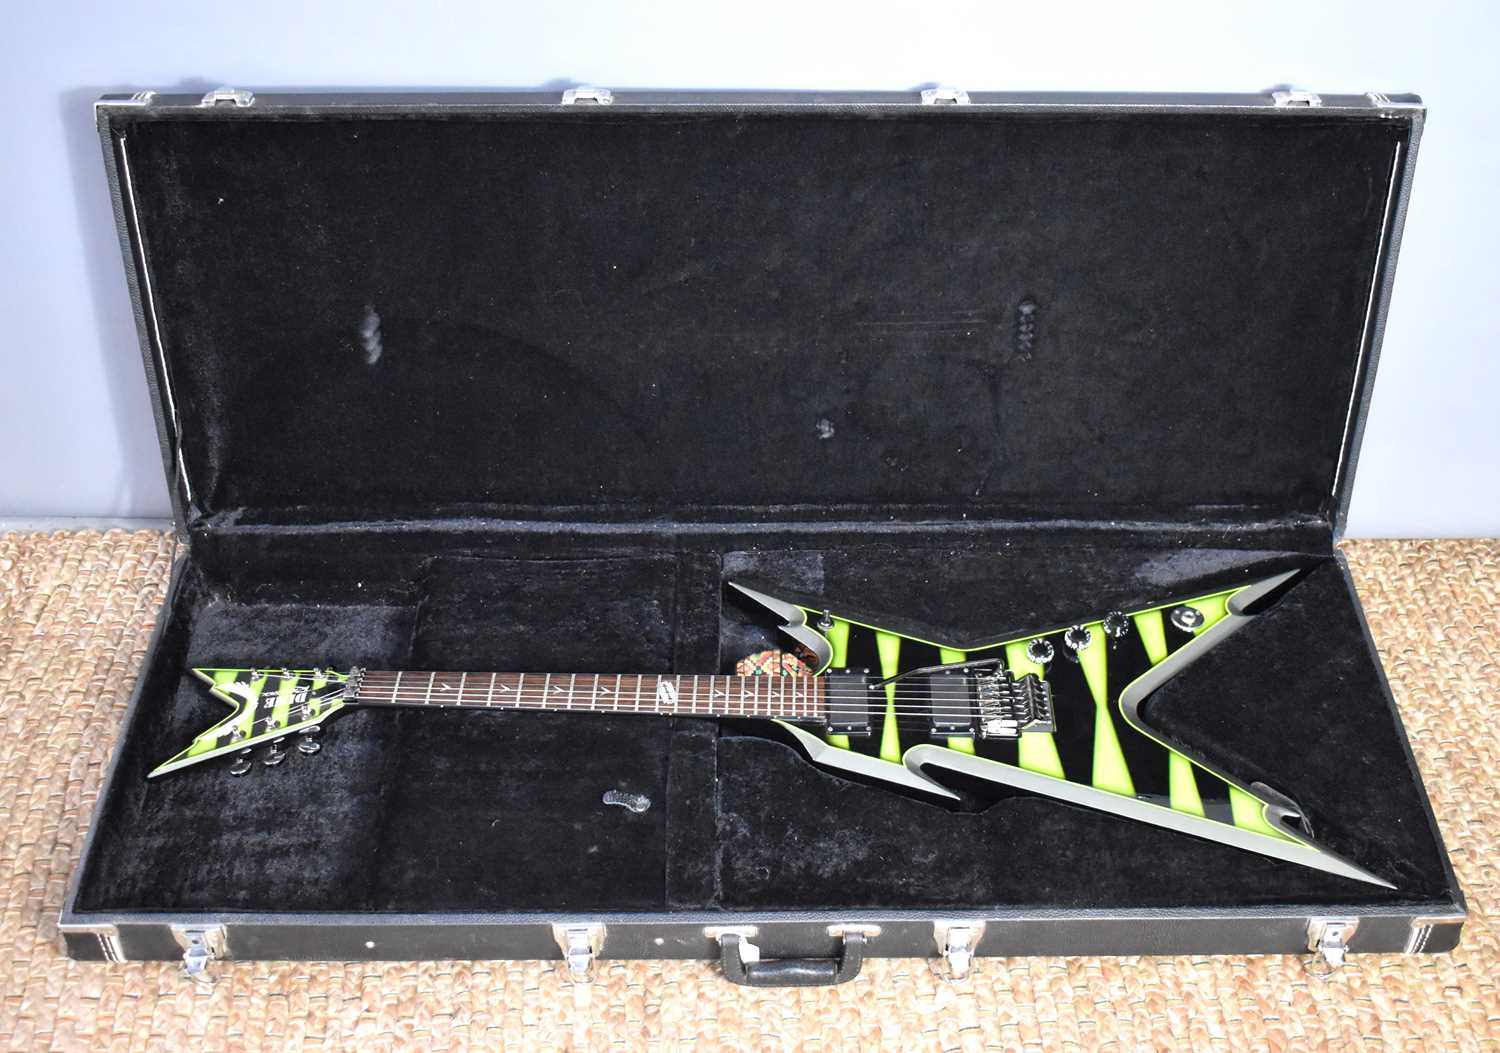 A Dean Dime Razorback electric guitar in the Slime Bumblebee finish, Dimebag Darrell signature,